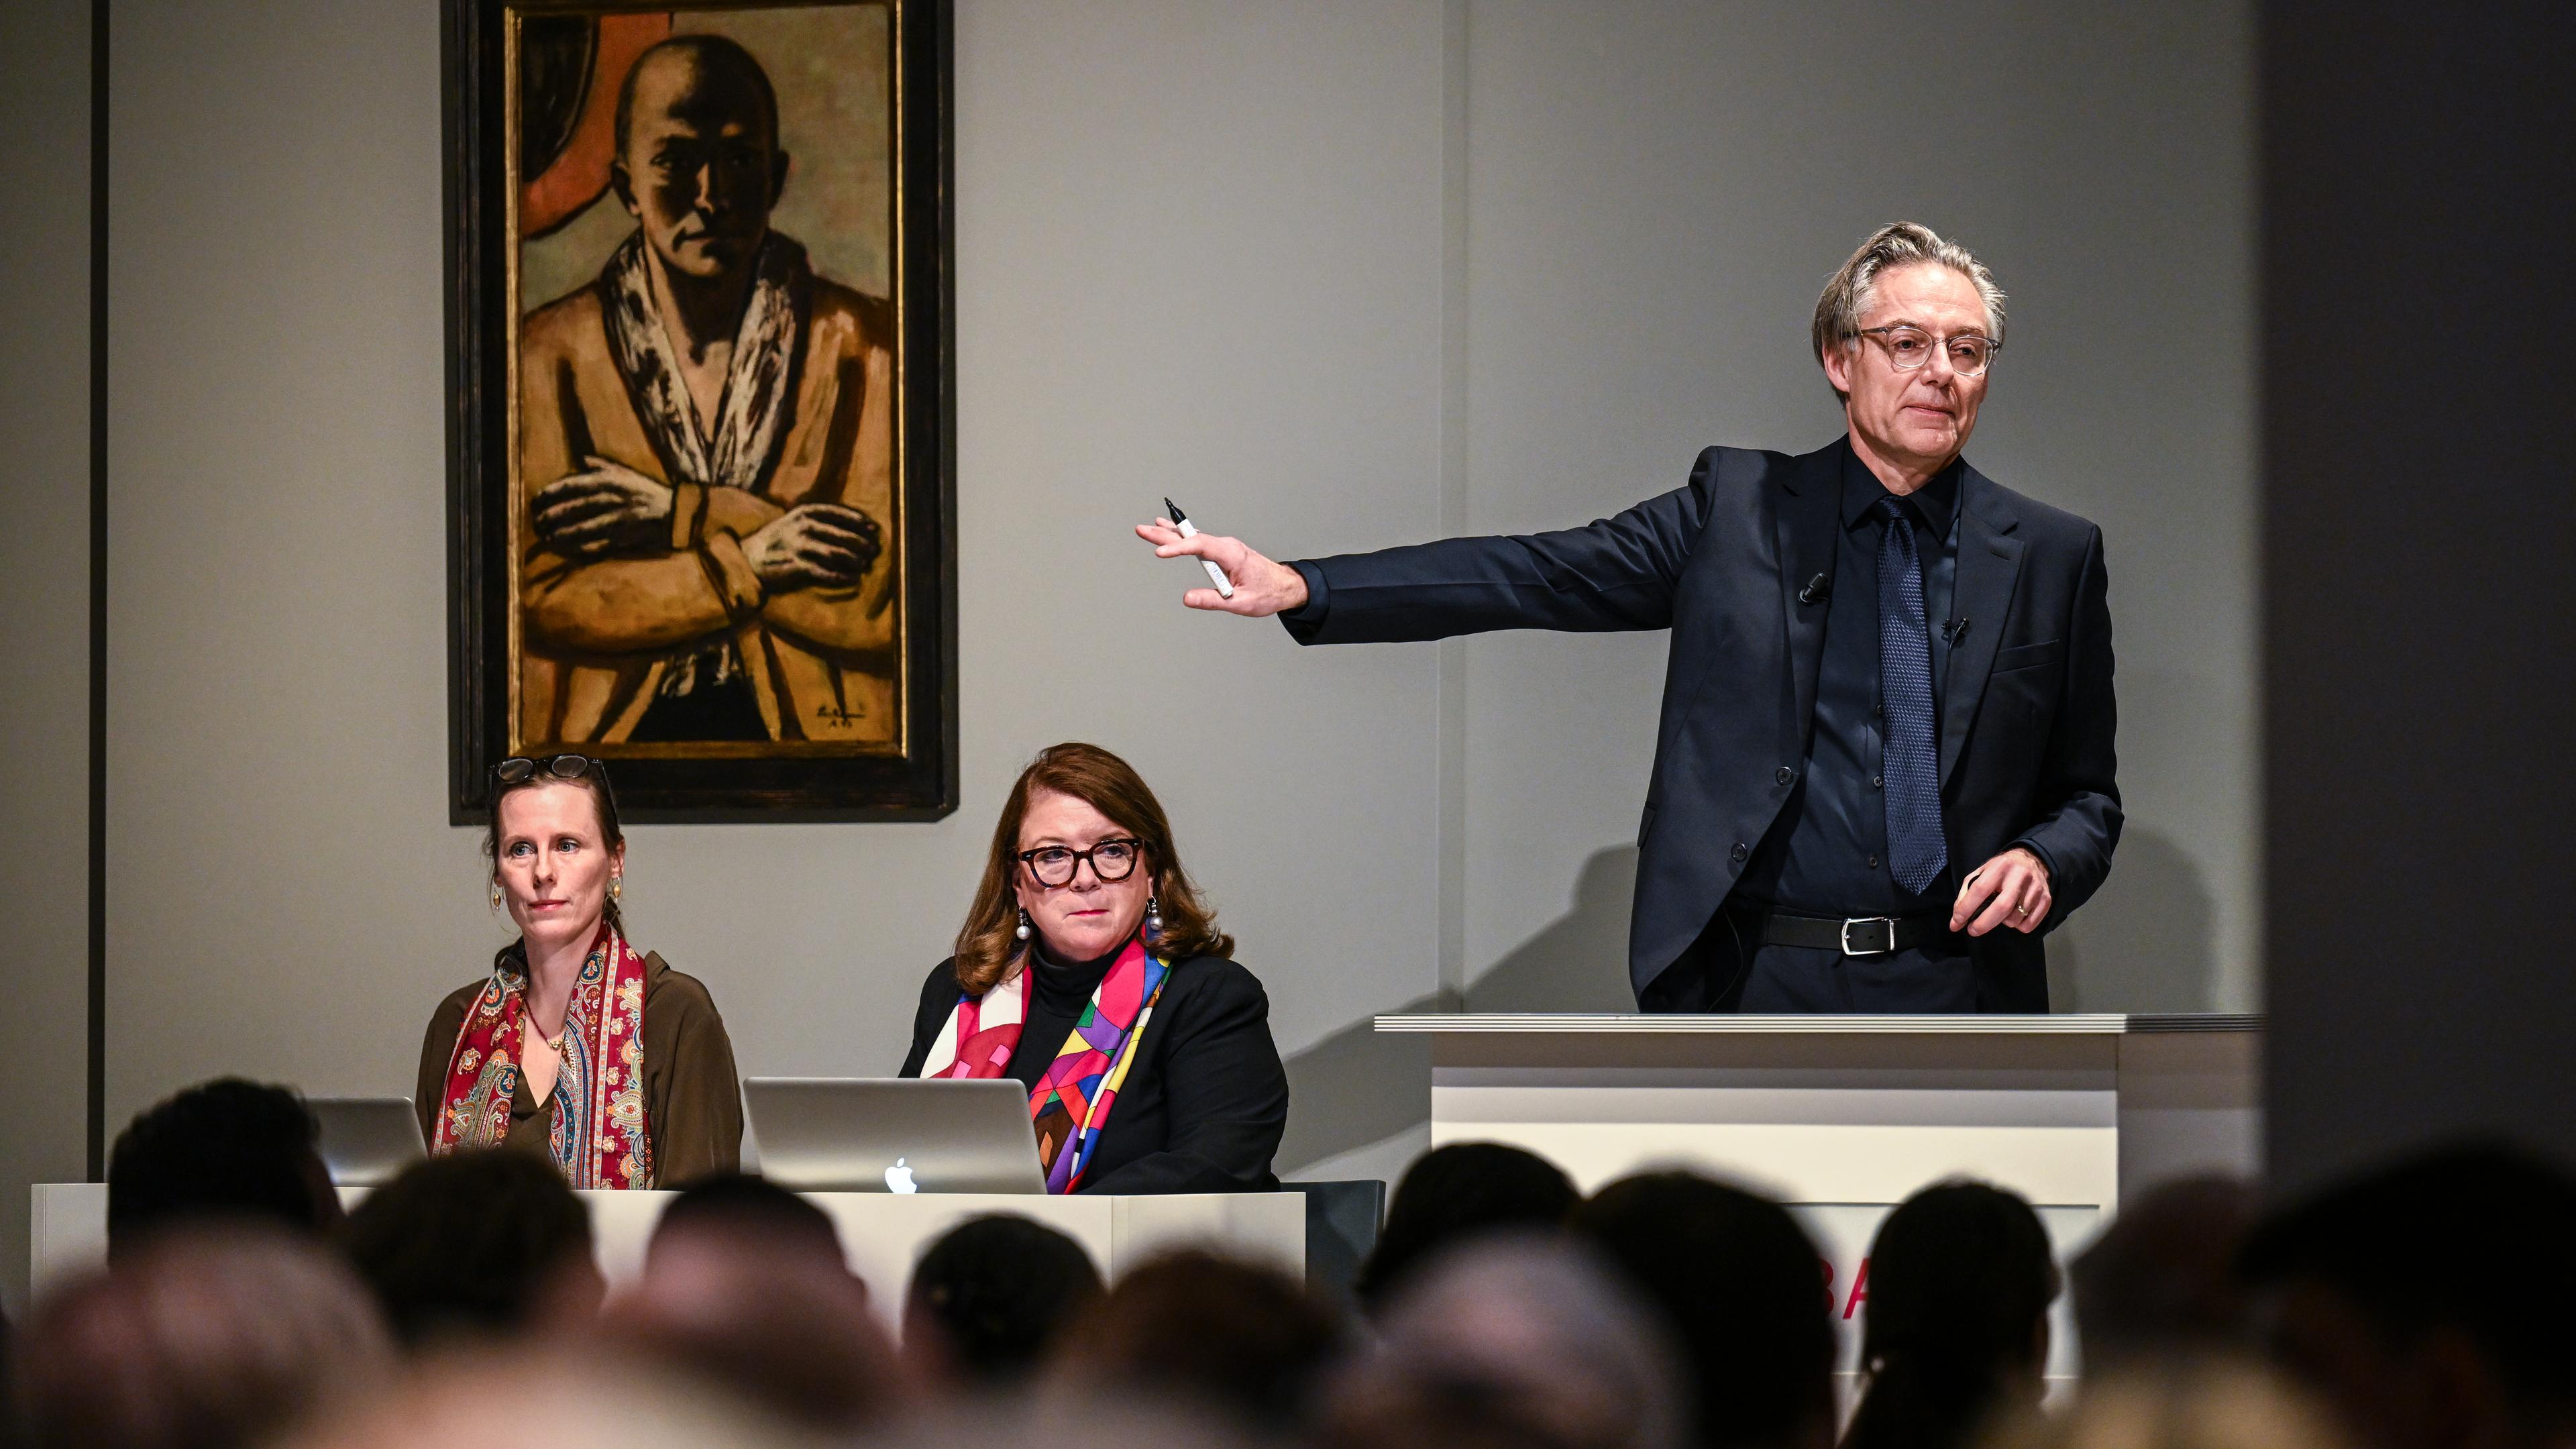 Markus Krause leitet die Auktion des Gemäldes "Selbstbildnis gelb-rosa" von Max Beckmann beim Auktionshaus Villa Grisebach.